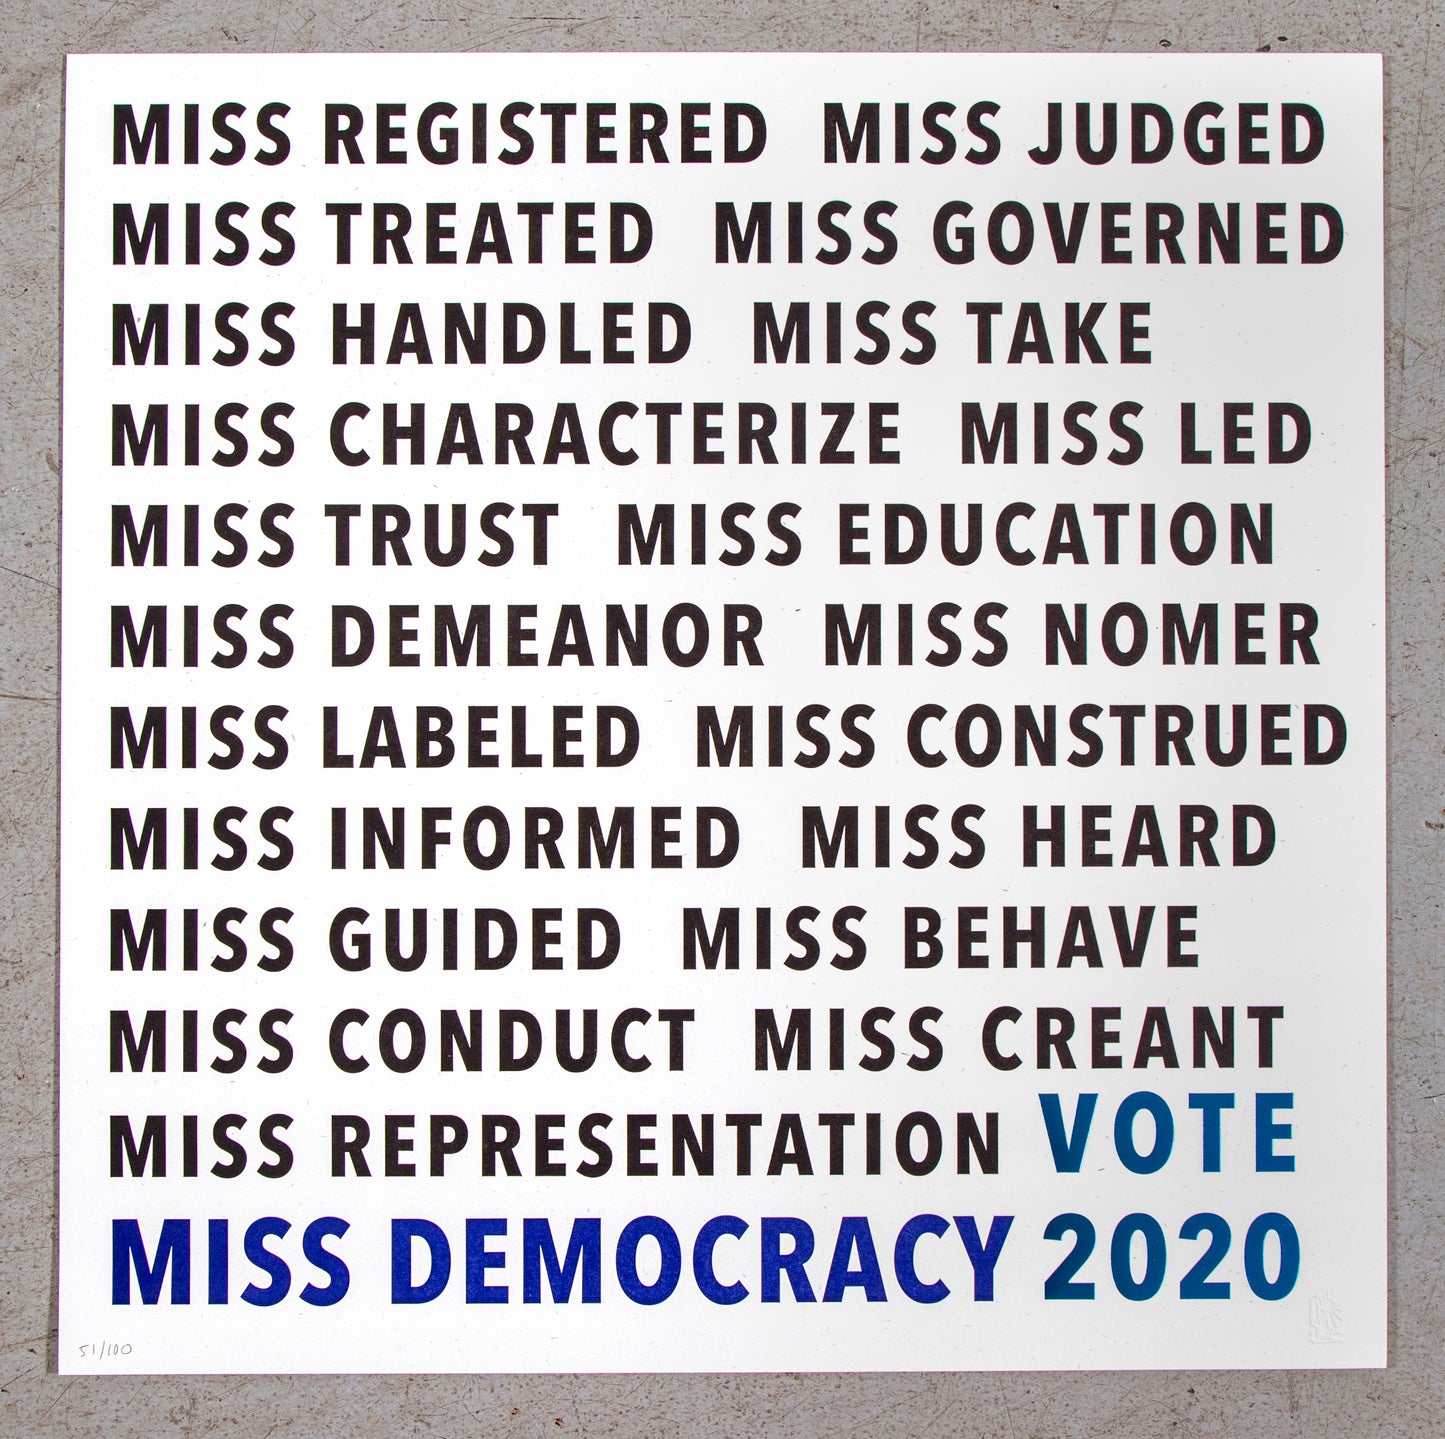 Victory Garden | Miss Democracy 2020 – Miss Democracy